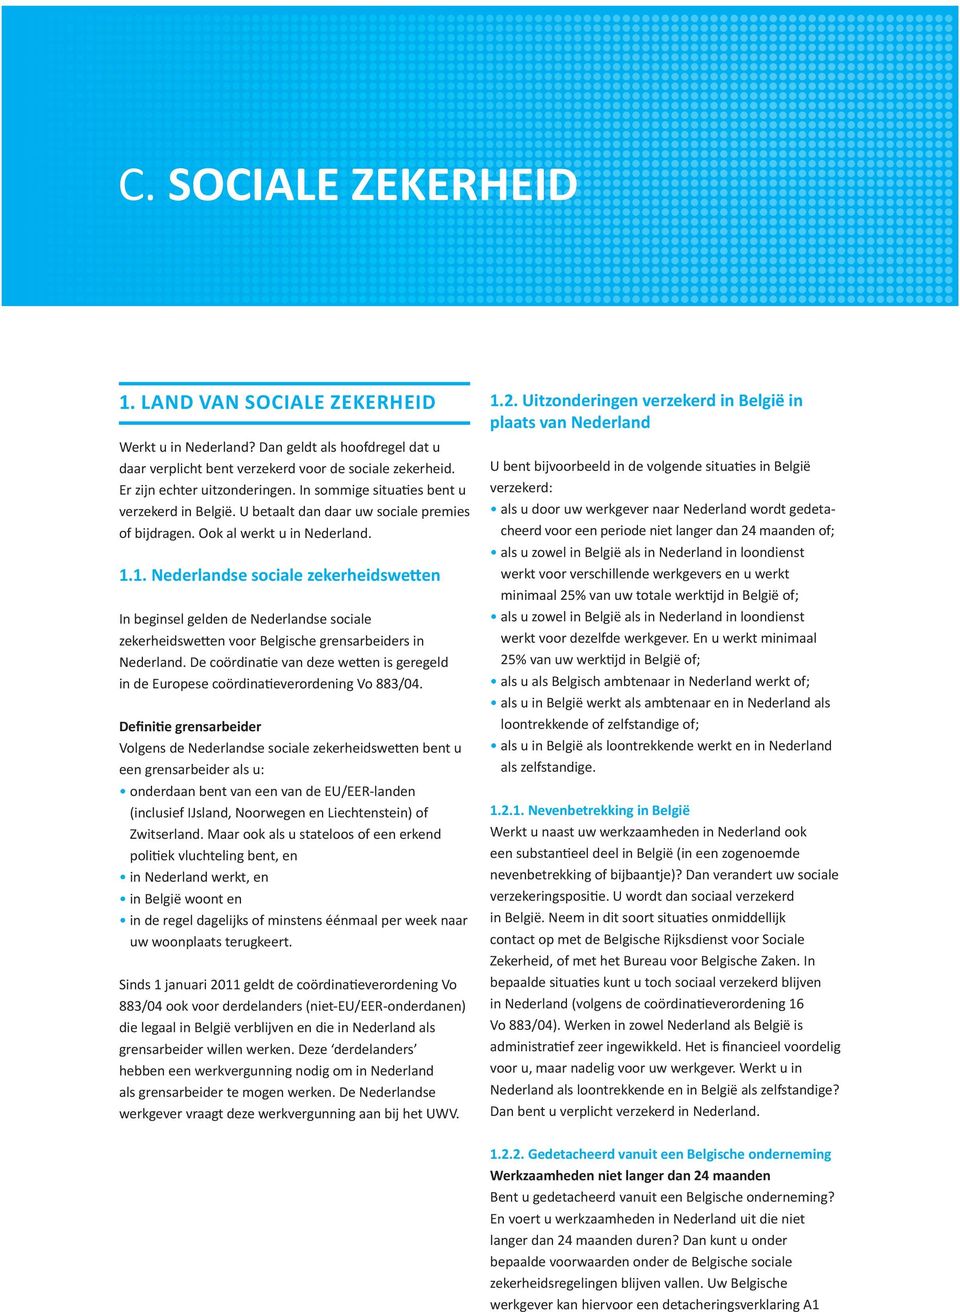 1. Nederlandse sociale zekerheidswetten In beginsel gelden de Nederlandse sociale zekerheidswetten voor Belgische grensarbeiders in Nederland.